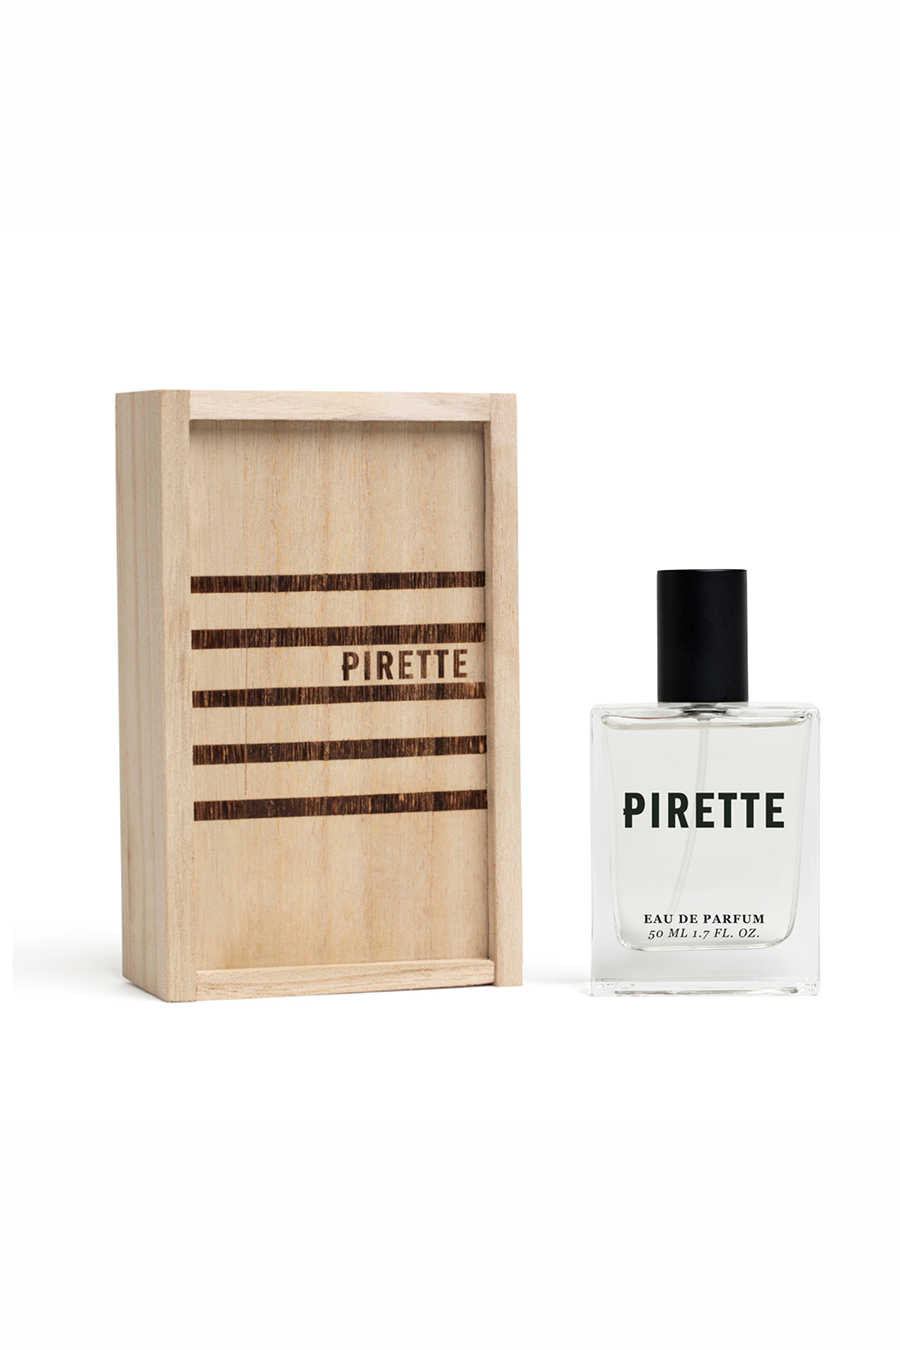 Pirette Eau de Parfum Spray 1.7oz - Main Image Number 1 of 3